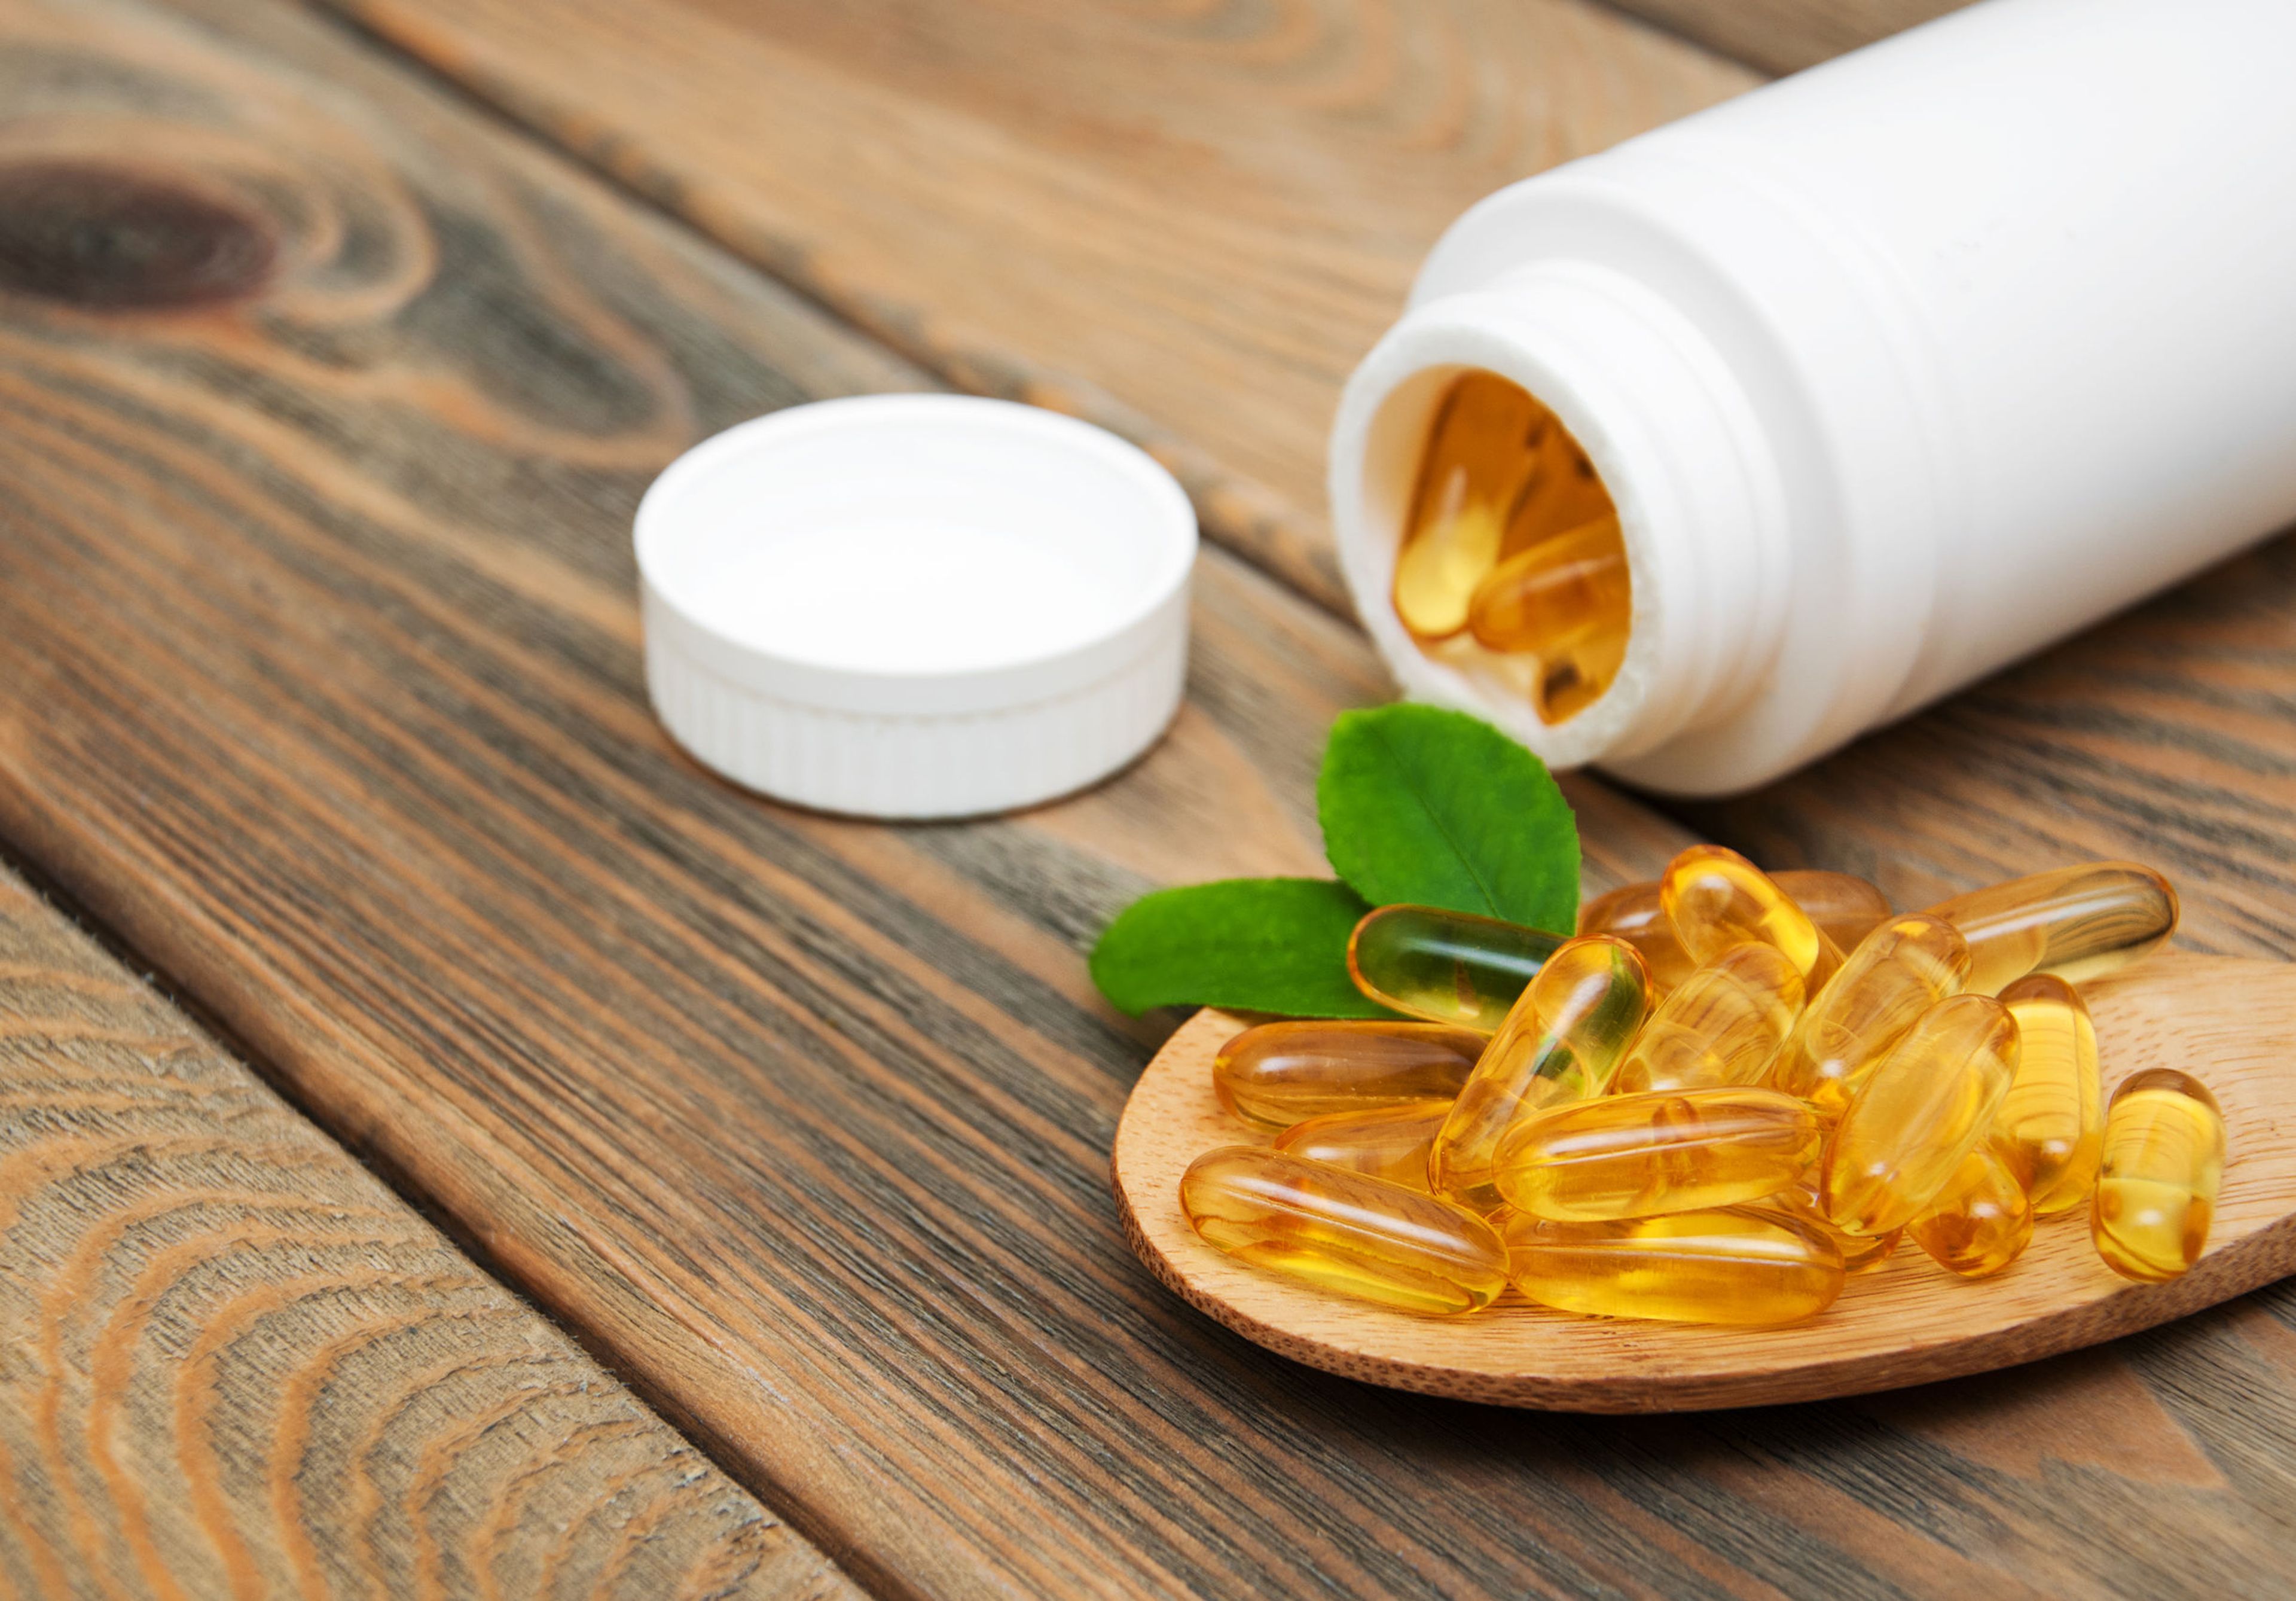 La nueva moda de los suplementos de vitamina D podría salir muy cara a algunos consumidores, según los médicos